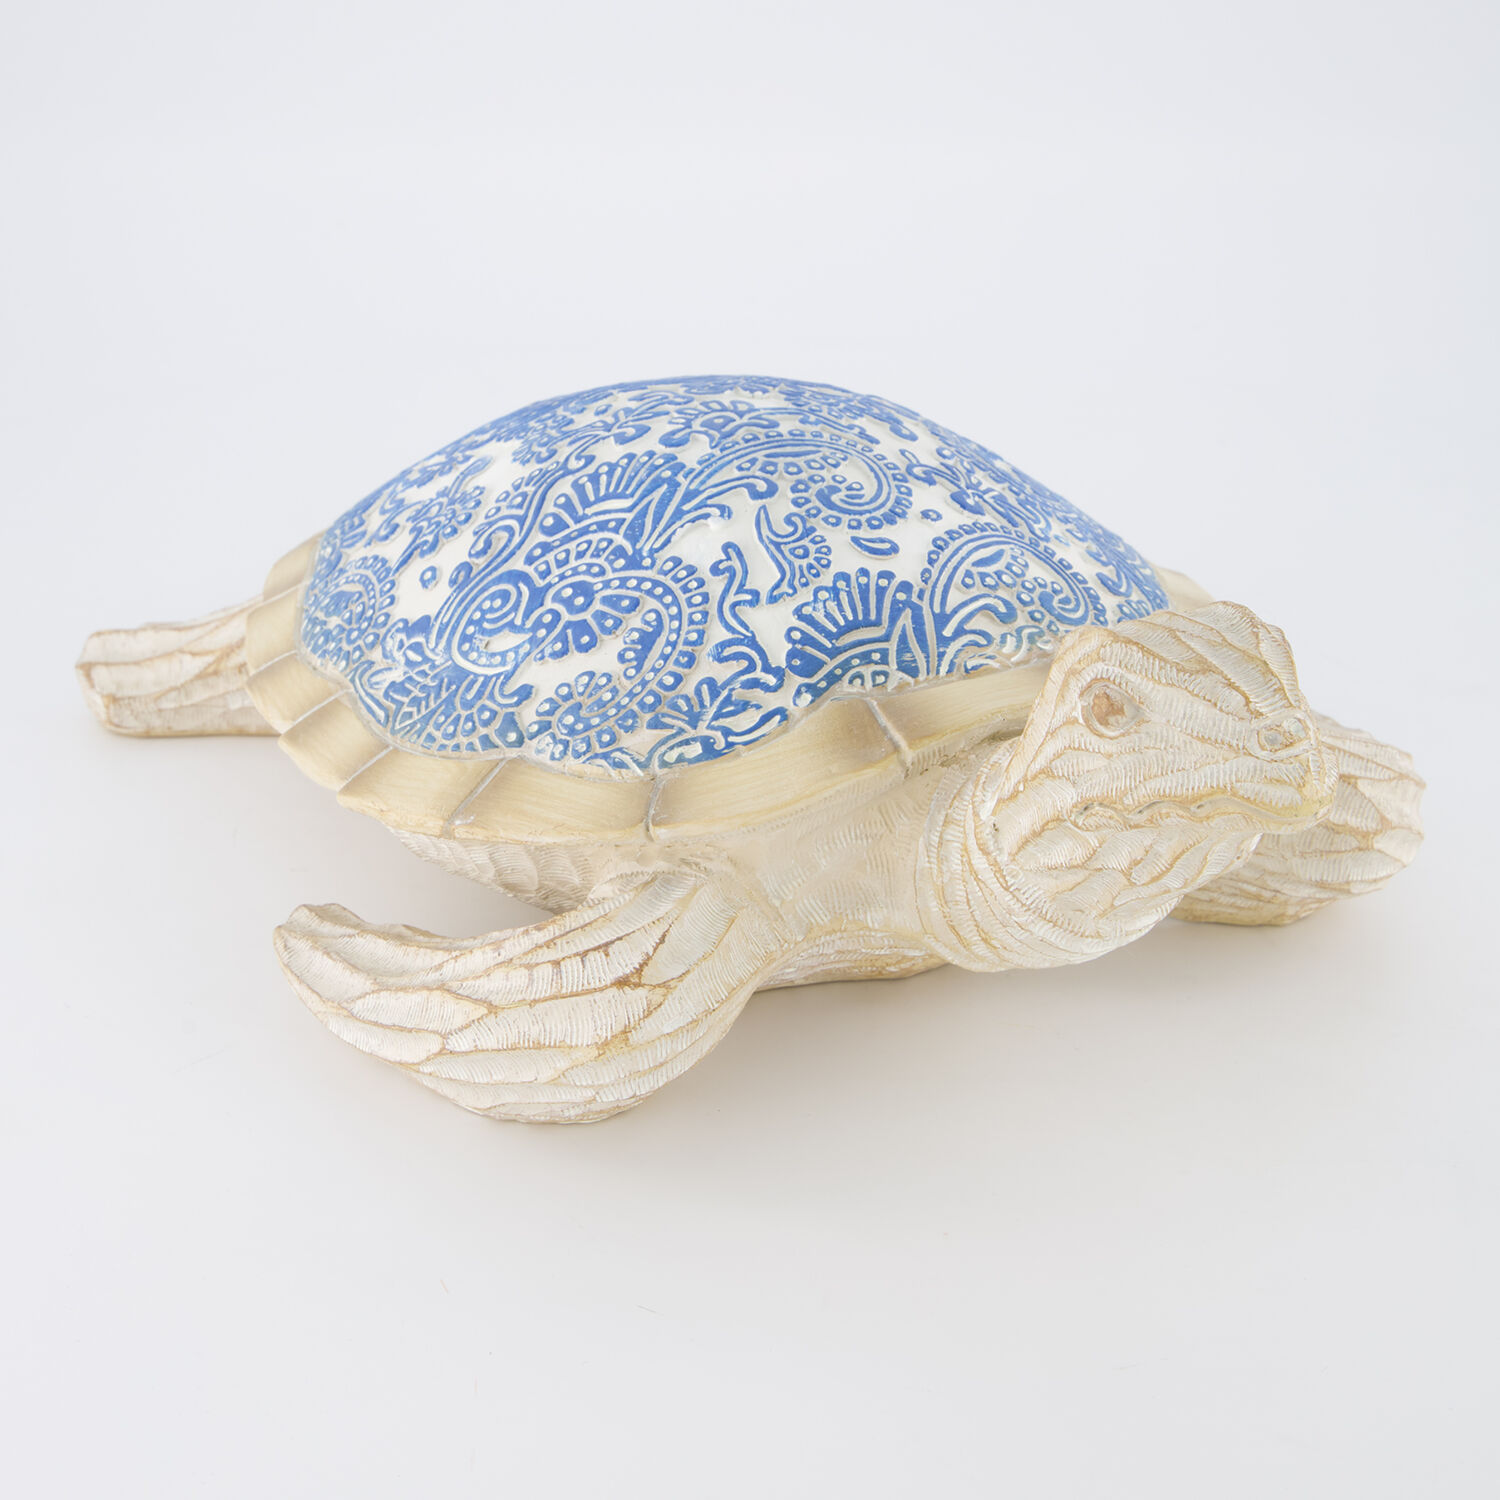 Декоративная фигурка сине-бежевого цвета в виде морской черепахи 12х37см Galt International раскраски galt ферма